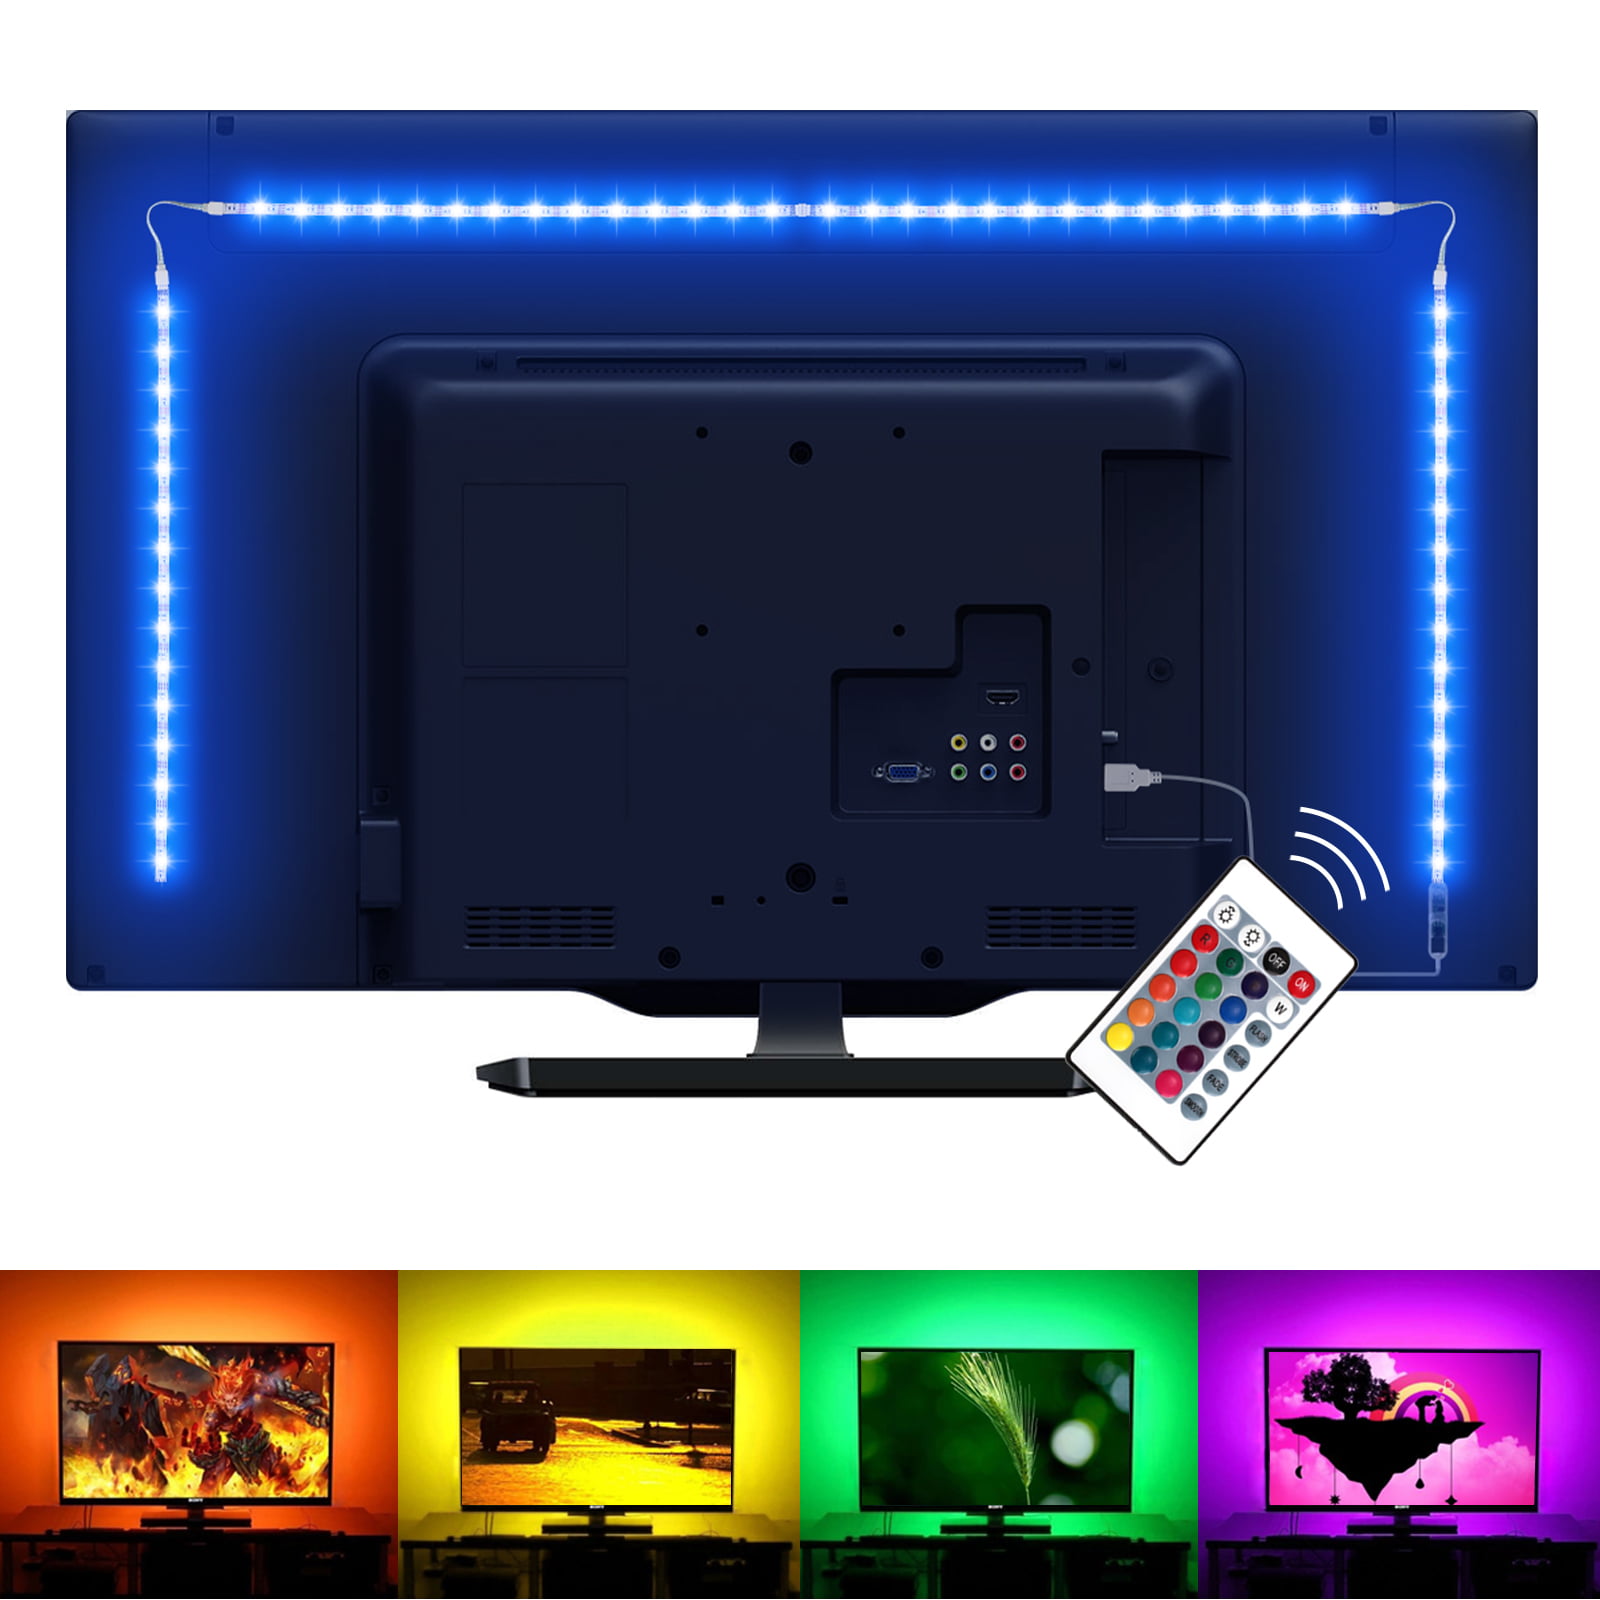 Details about   59 Inch USB LED TV Strip,IP65 Waterproof 5V RGB LED TV Backlighting Strip HDTV 